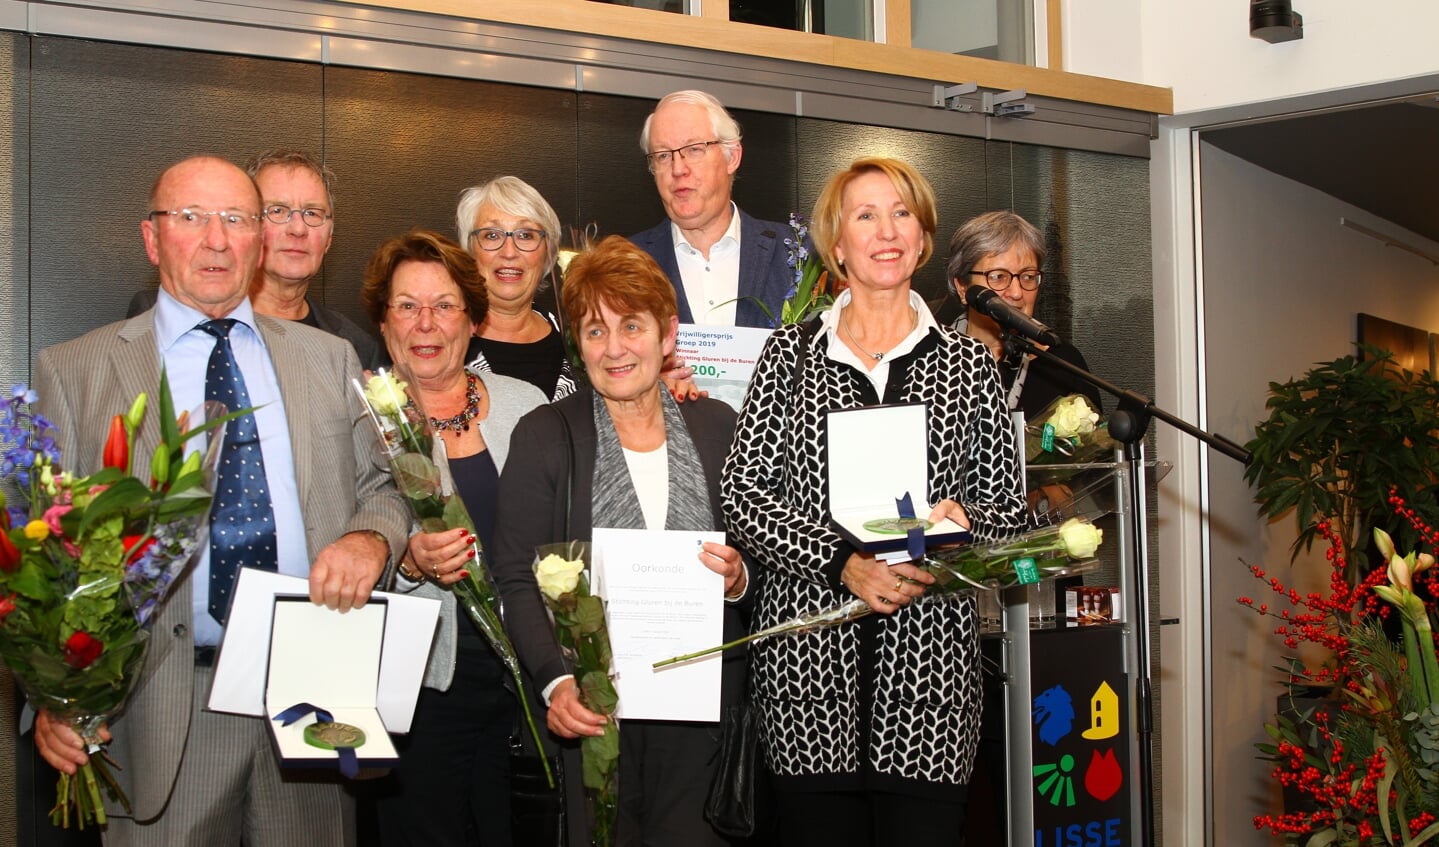 De winnaars van de vrijwilligersprijzen van de gemeente Lisse bij elkaar: Simon van Dijk (links) en Stichting Gluren bij de Buren.